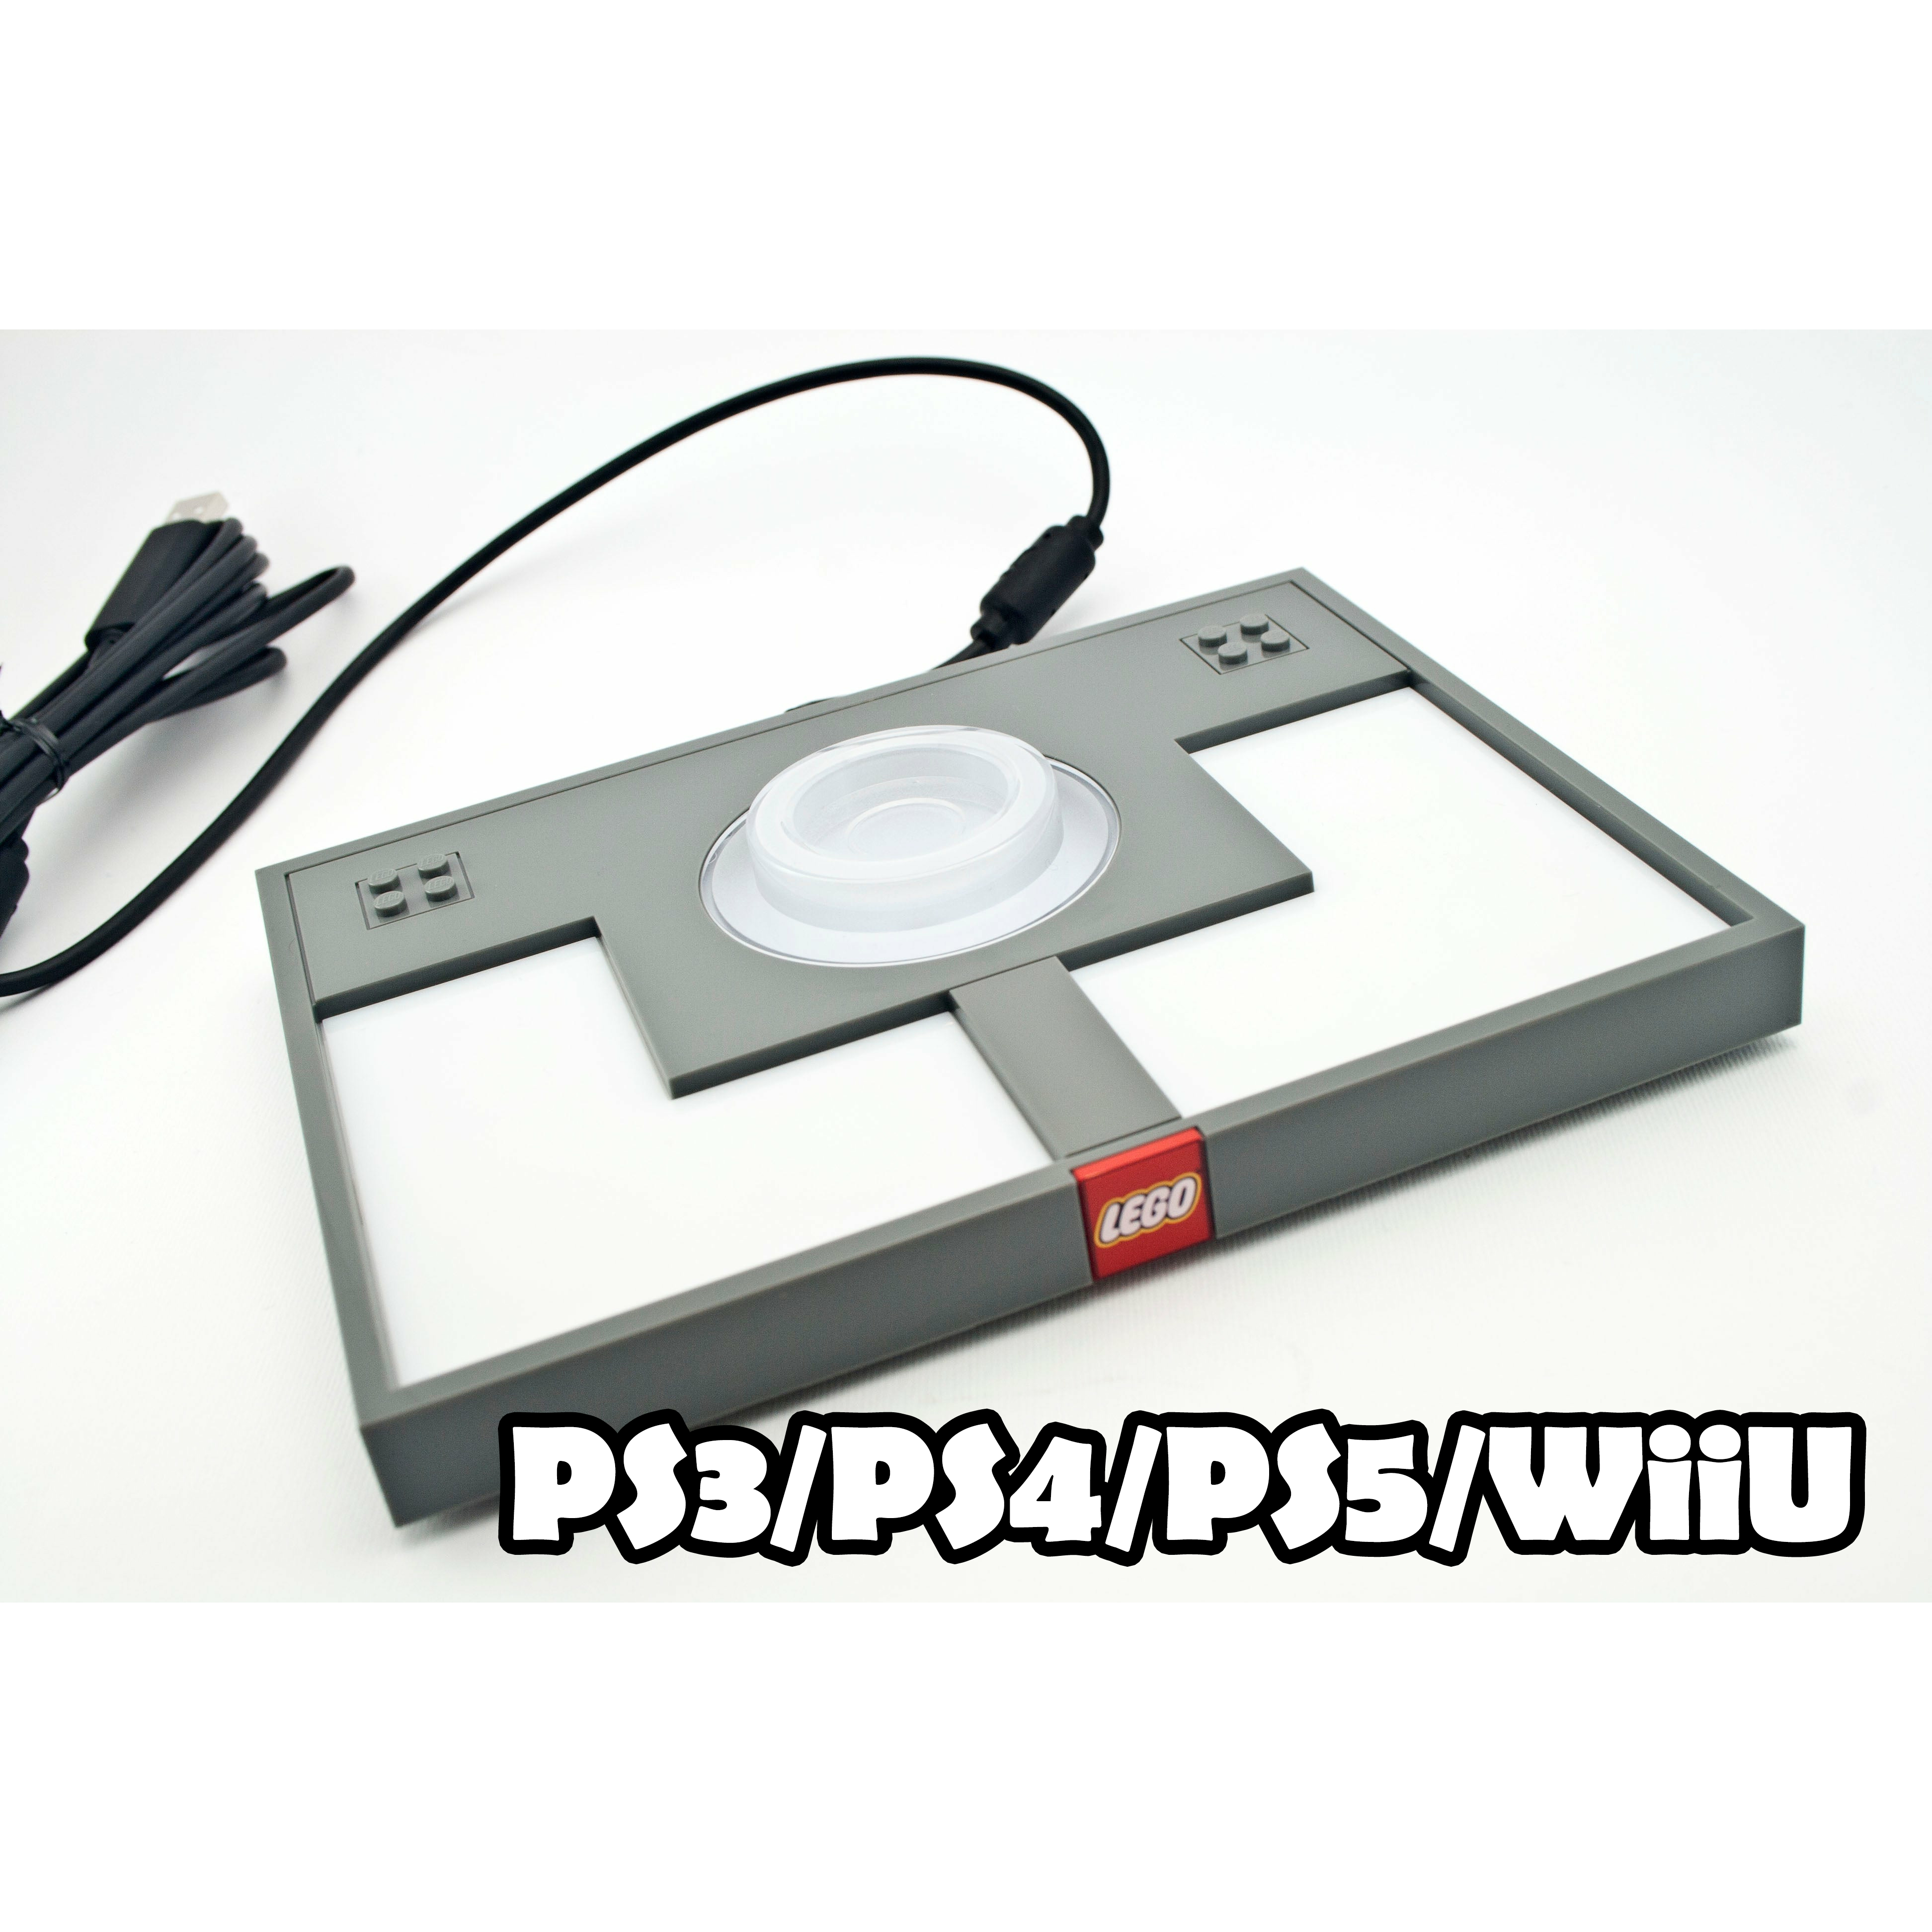 Portail USB Lego Dimensions (PS3 / PS4 / PS5 / Wii U)